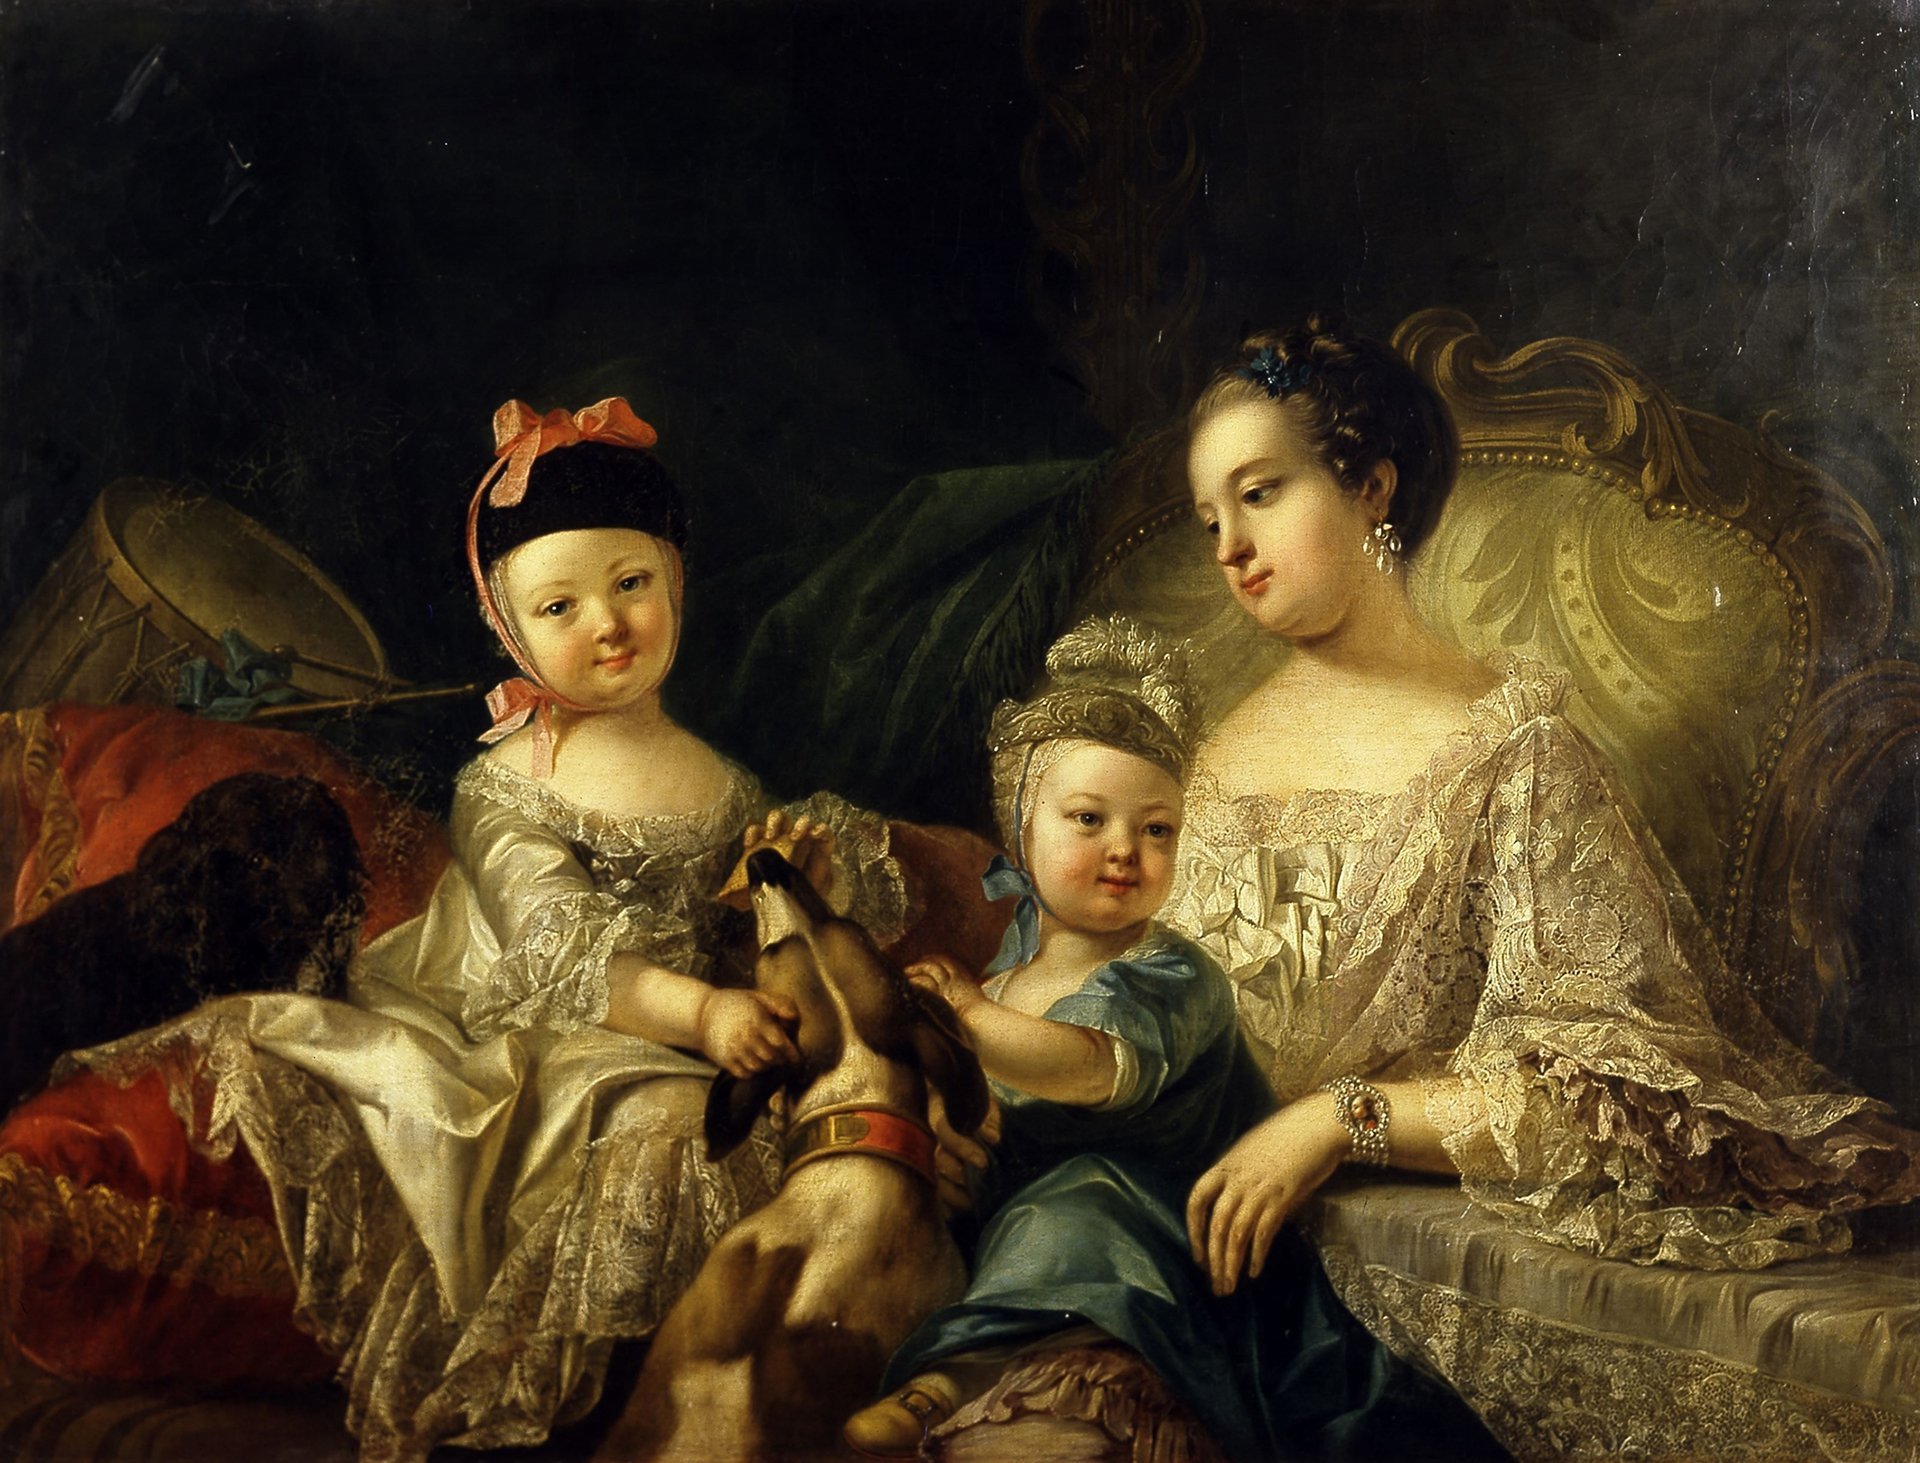 Abbildung des Werks "Karoline Luise mit ihren zwei Söhnen" von Joseph Melling aus dem Jahr 1757, das in der Ausstellung "Die Meister-Sammlerin" vom 30. Mai bis 6. September 2015 in der Staatlichen Kunsthalle Karlsruhe zu sehen war.